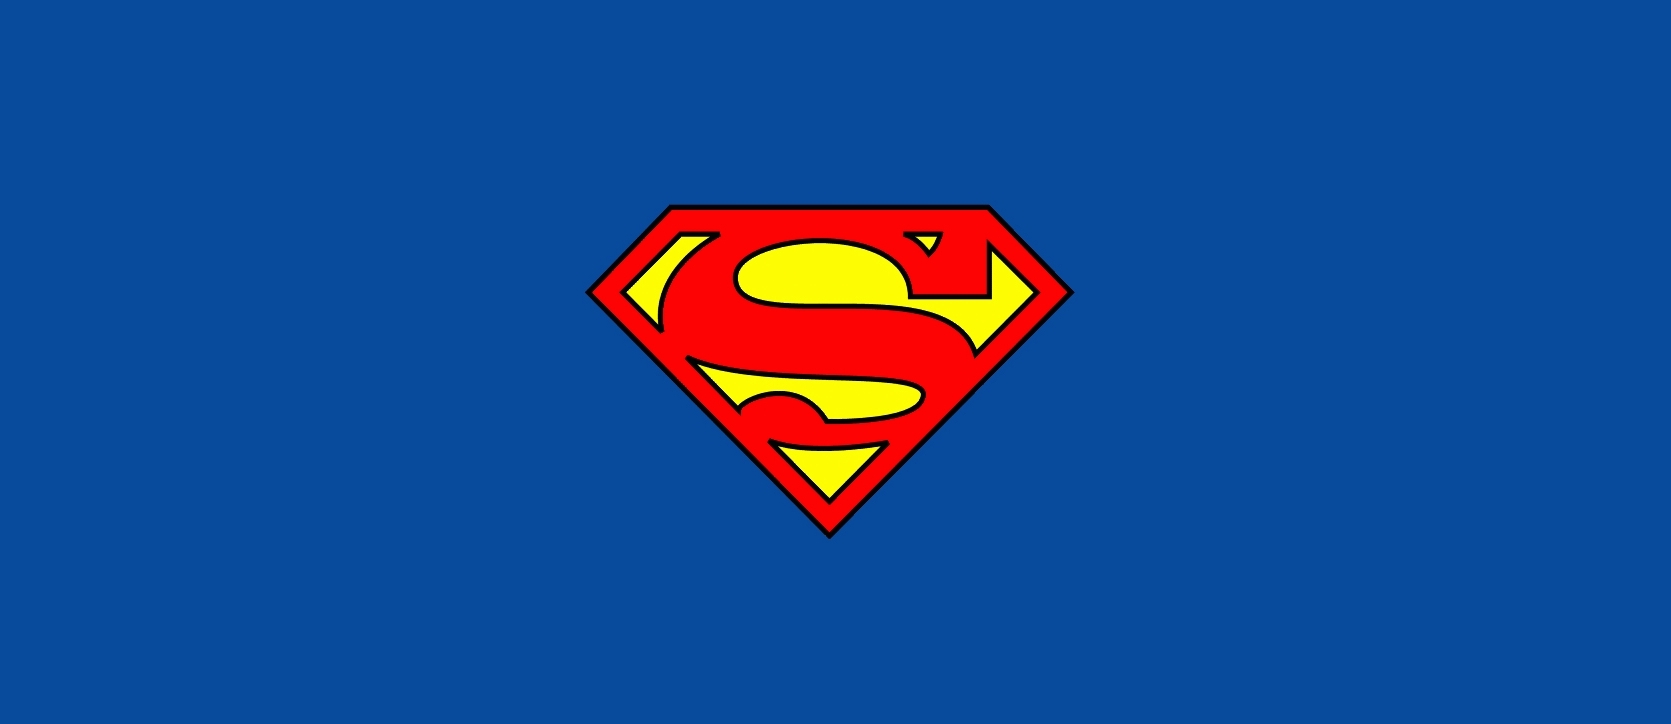 スーパーマンのロゴの壁紙,スーパーマン,架空の人物,スーパーヒーロー,正義リーグ,シンボル